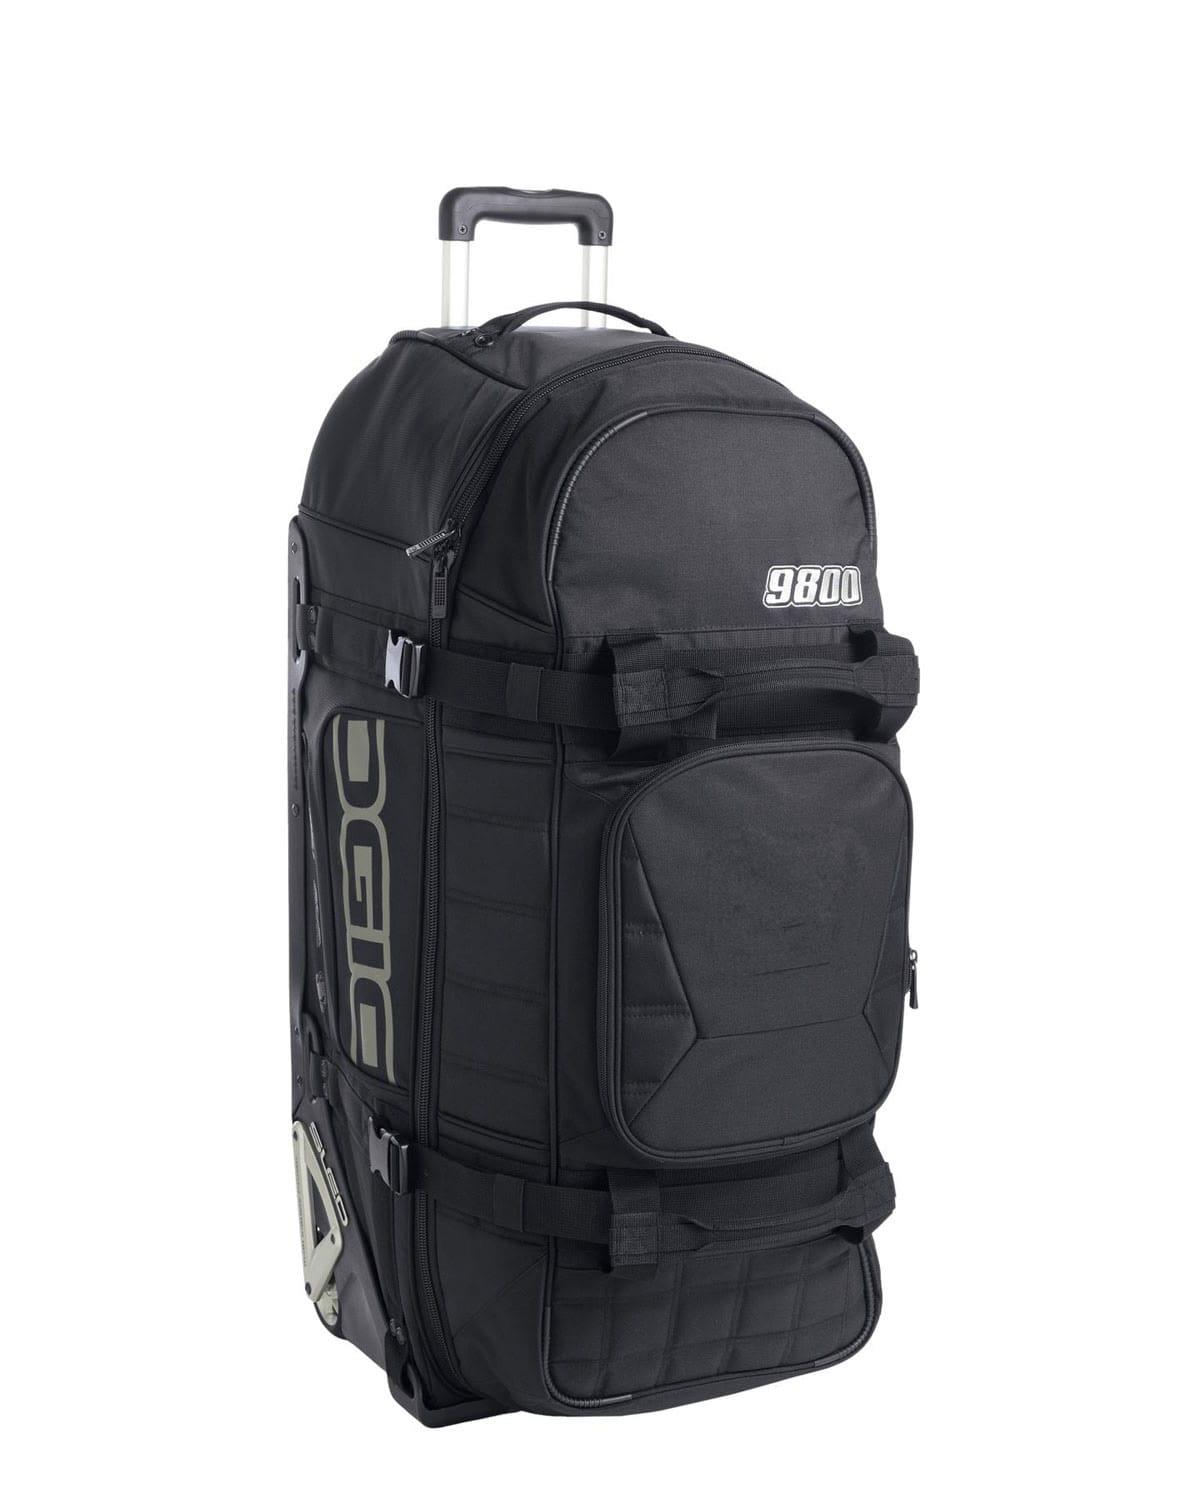 Ogio 421001 Travel Bag